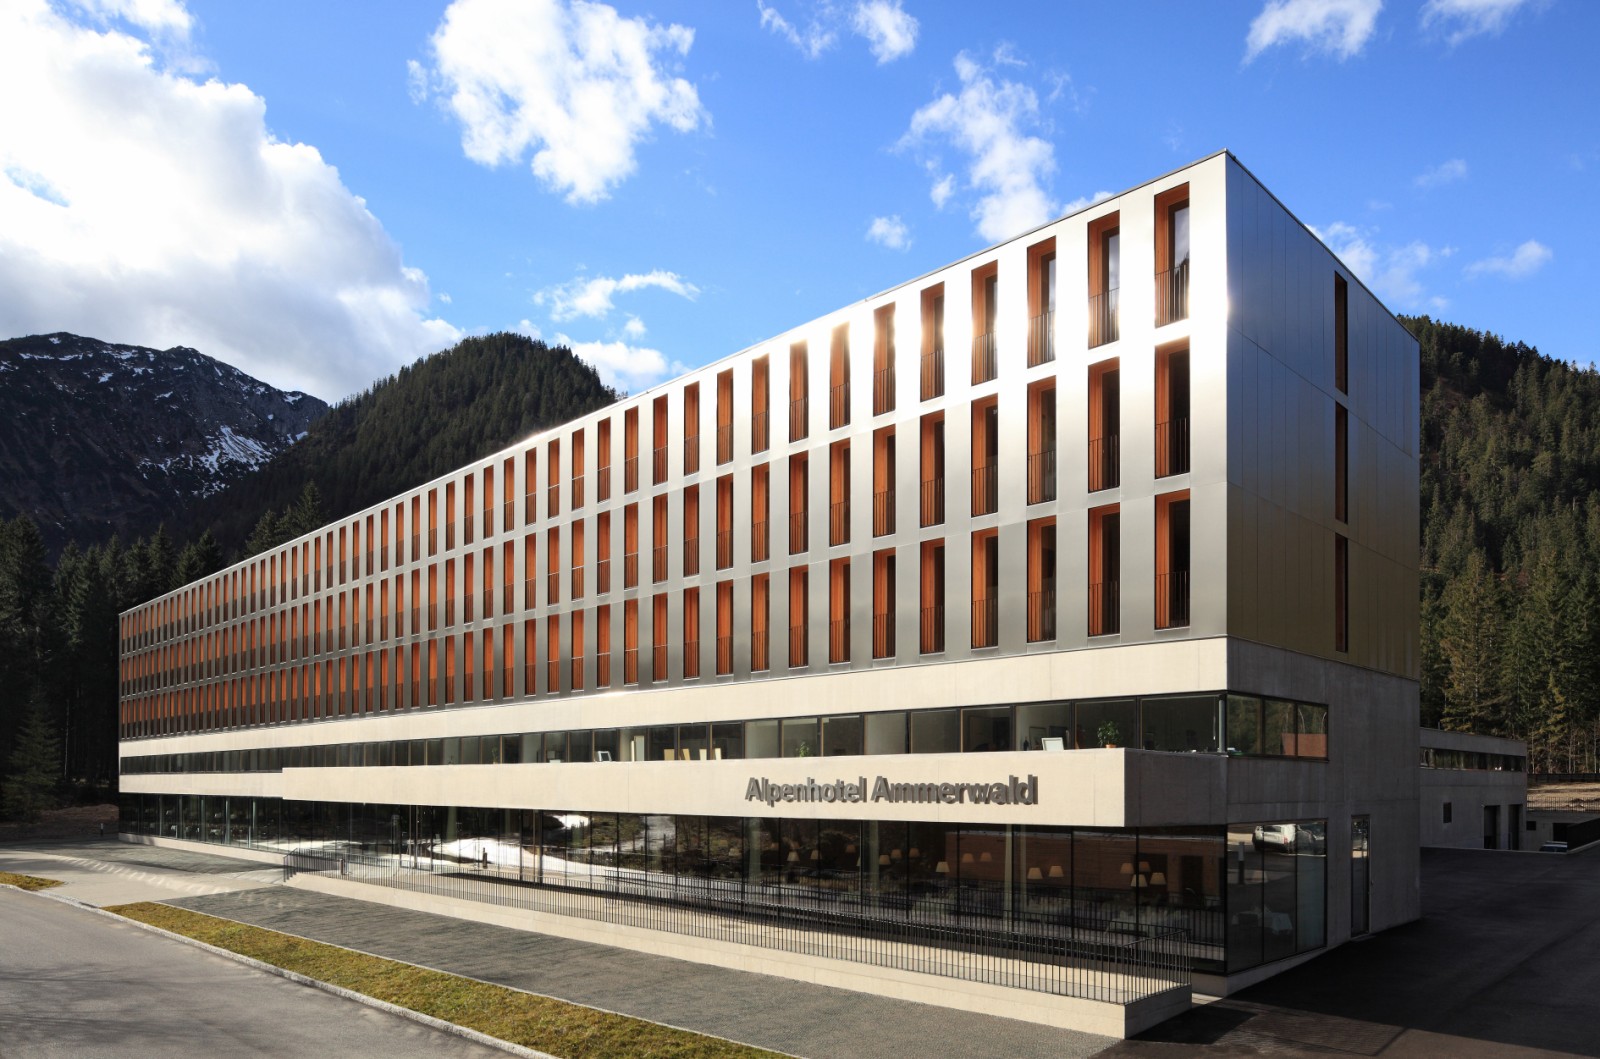 Alpenhotel ammerwald bmw group #1